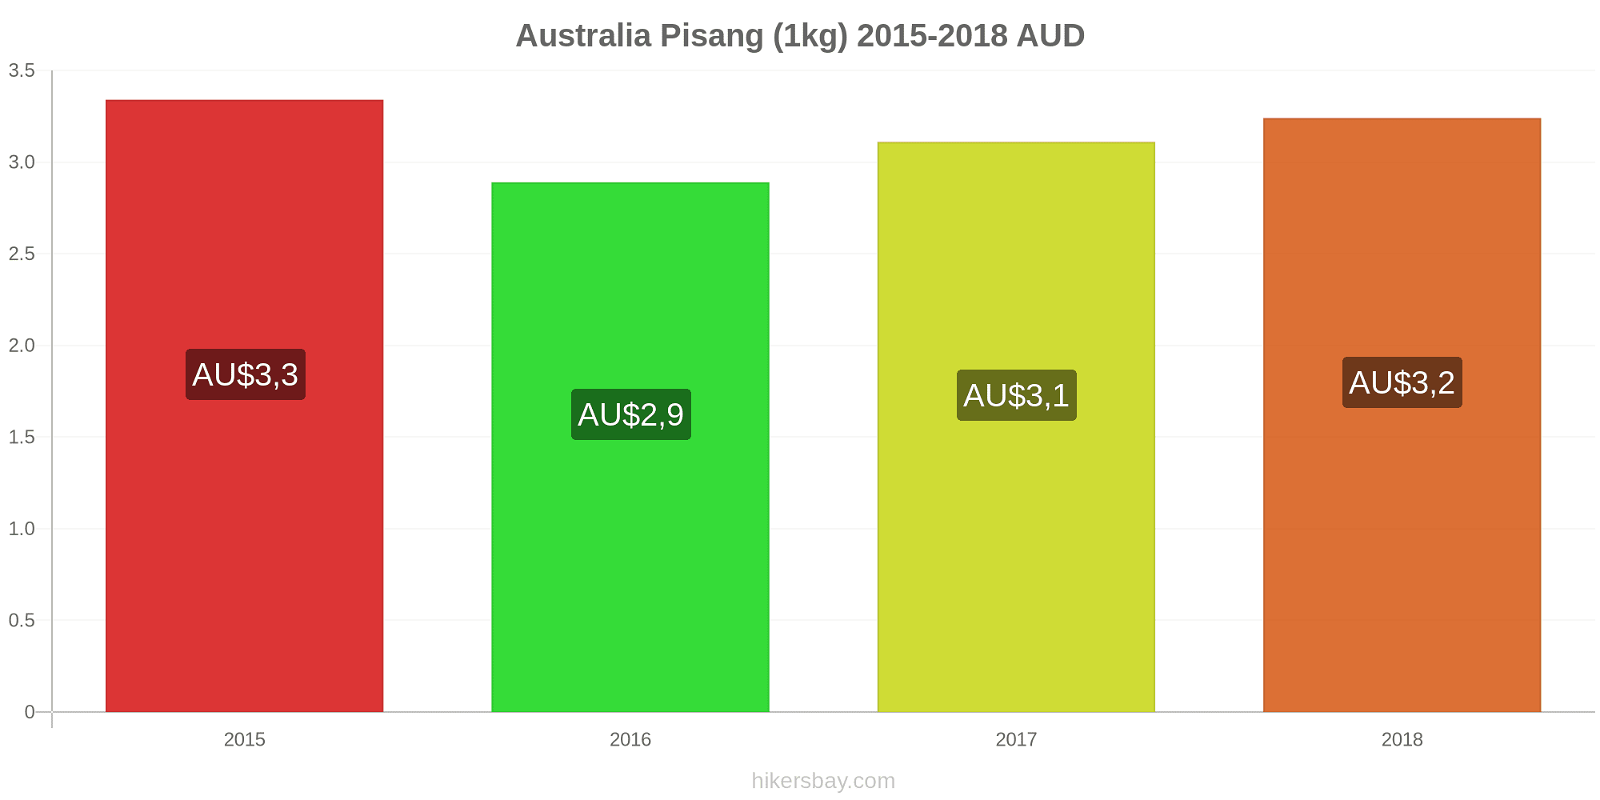 Australia perubahan harga Pisang (1kg) hikersbay.com